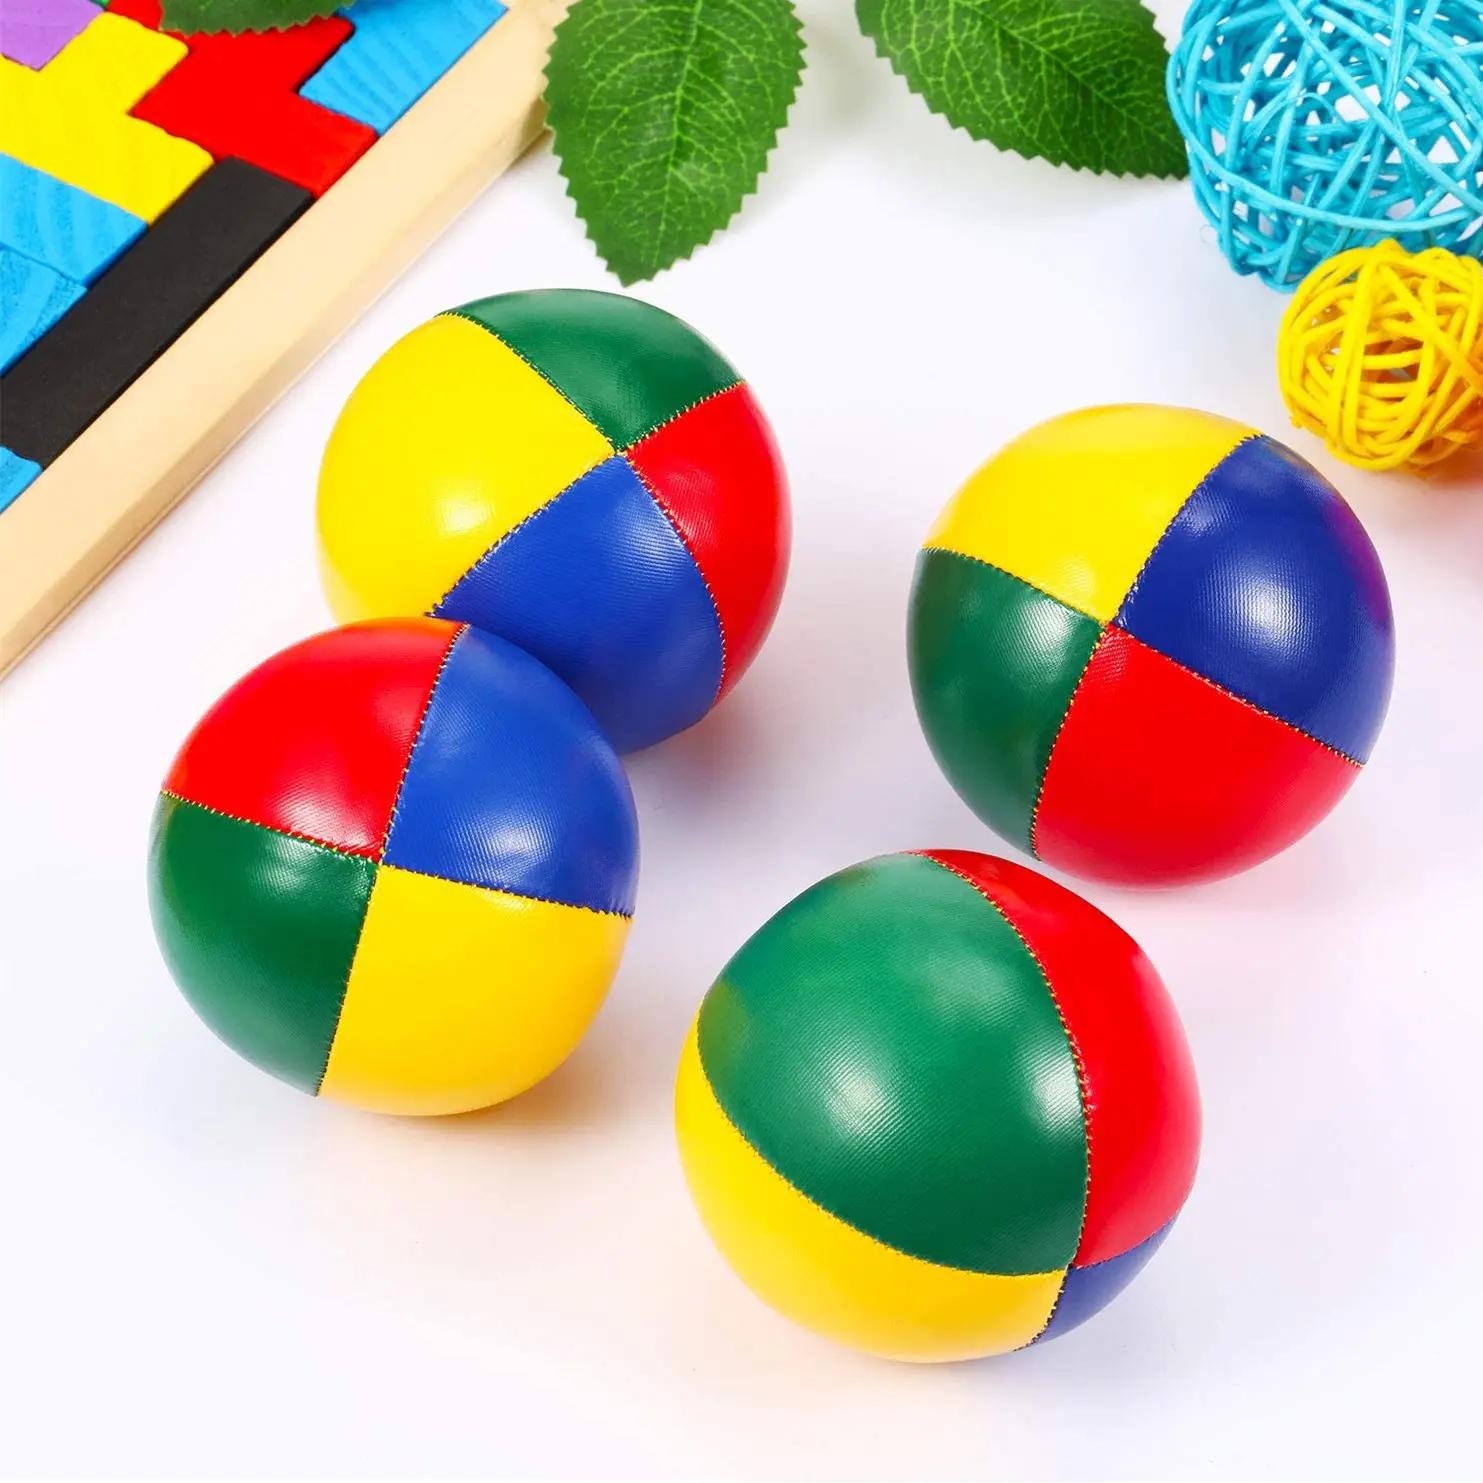 Bola de malabarismo em couro PU macio e durável, conjunto de bolas de malabarismo personalizadas coloridas, jogo divertido para adultos e crianças, novo design